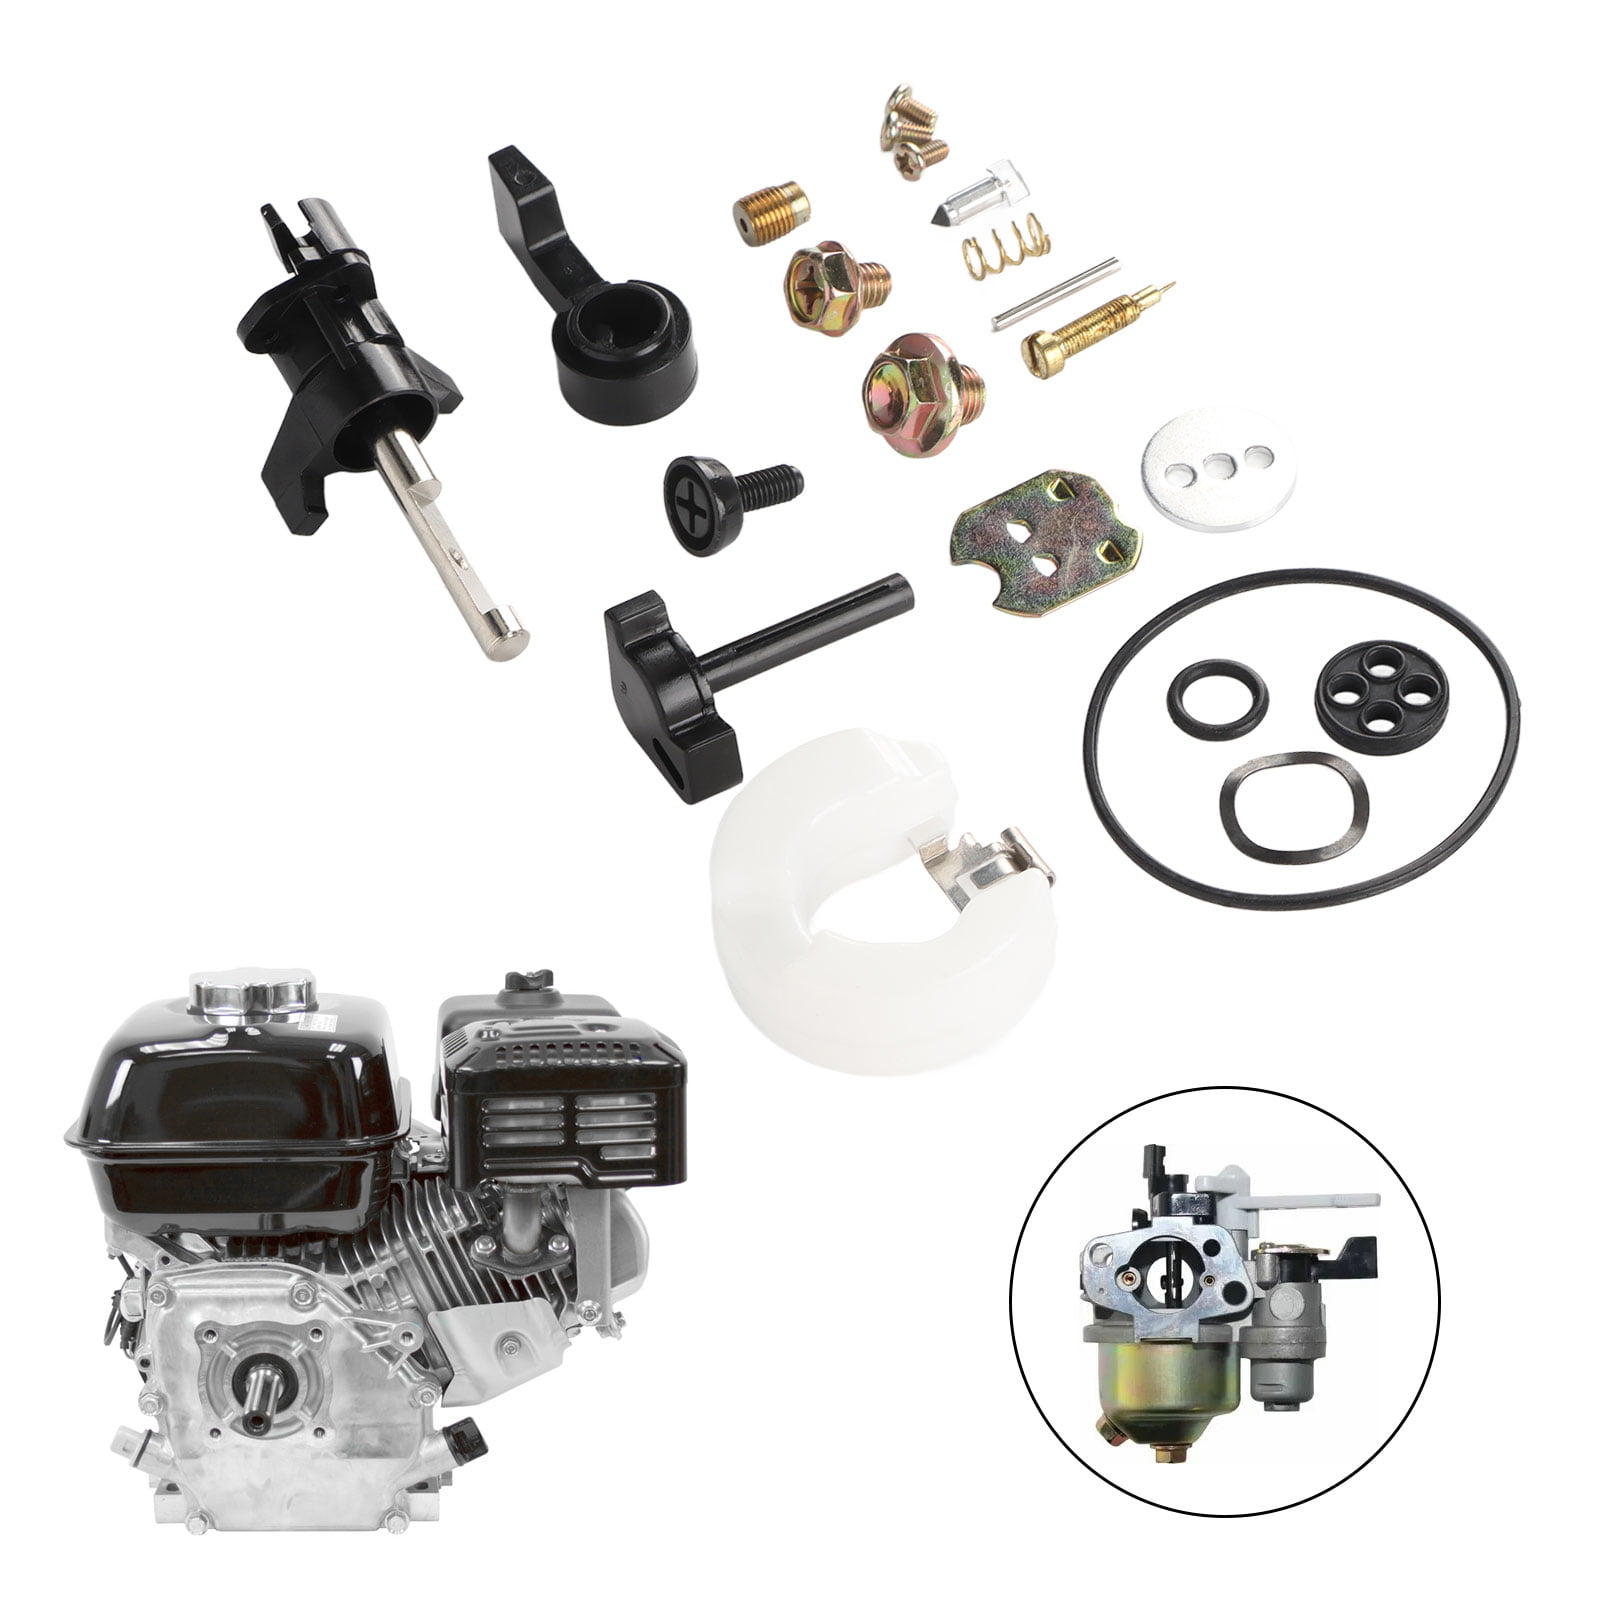 Carburetor Rebuild Kit For Honda GX160 GX200 5.5HP 6.5HP 16010-ZE1-812